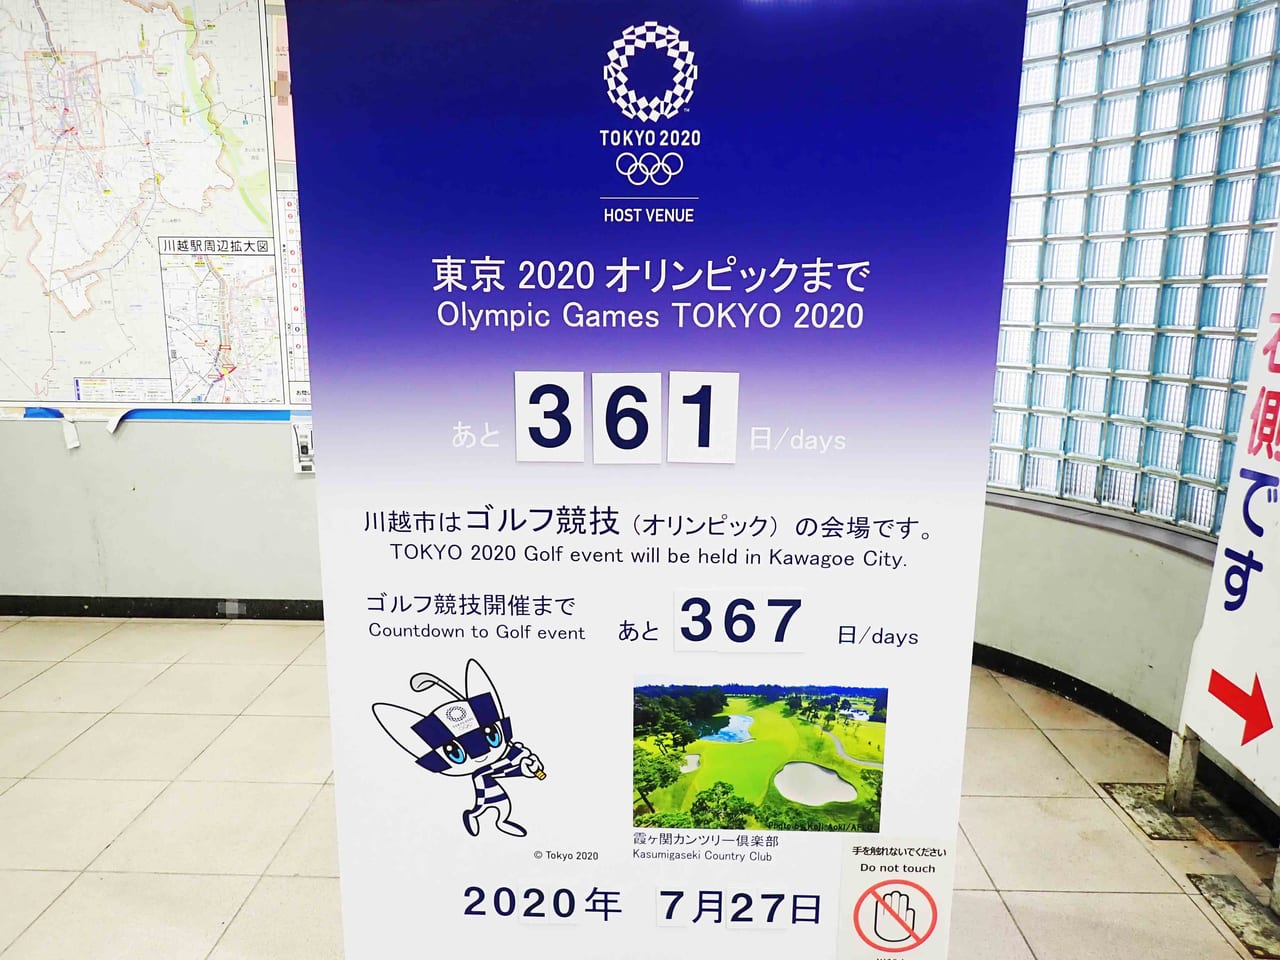 川越駅構内の東京オリンピック2020のカウントダウンボード